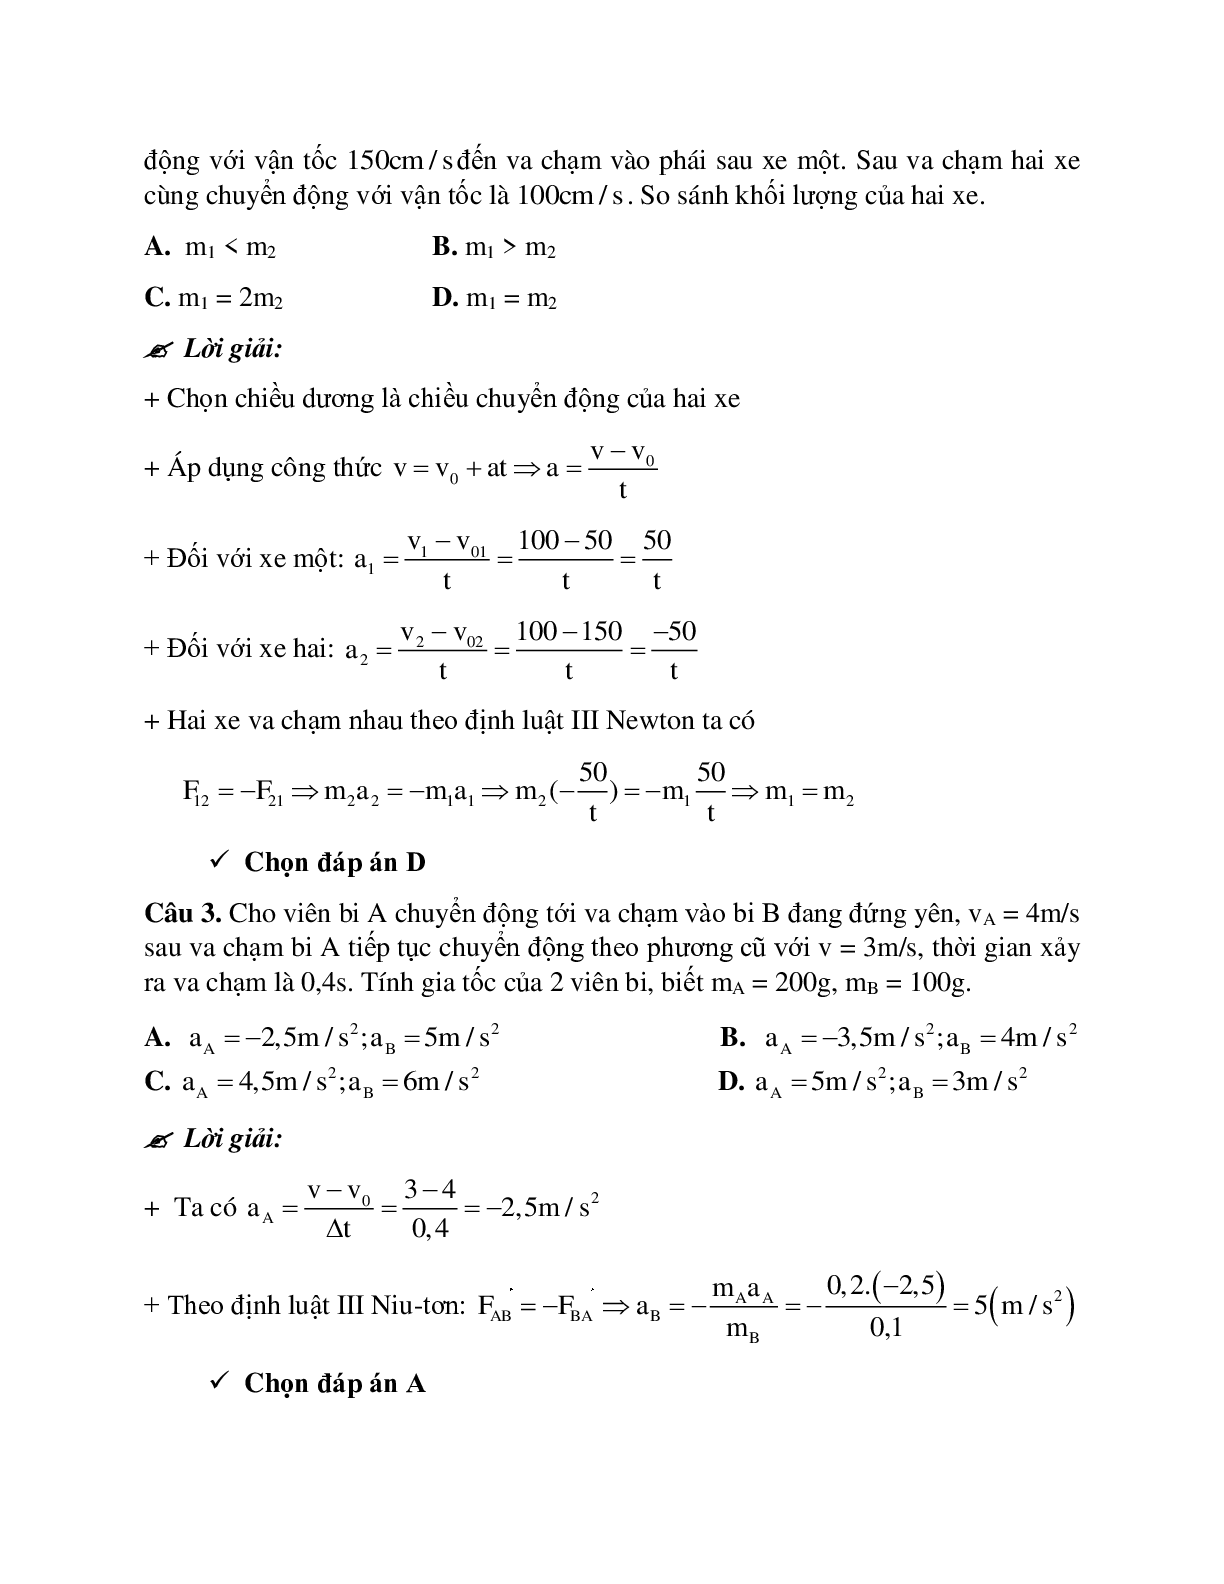 Phương pháp giải và bài tập về Bài toán hai vật va chạm nhau - định luật III Newton chọn lọc (trang 2)